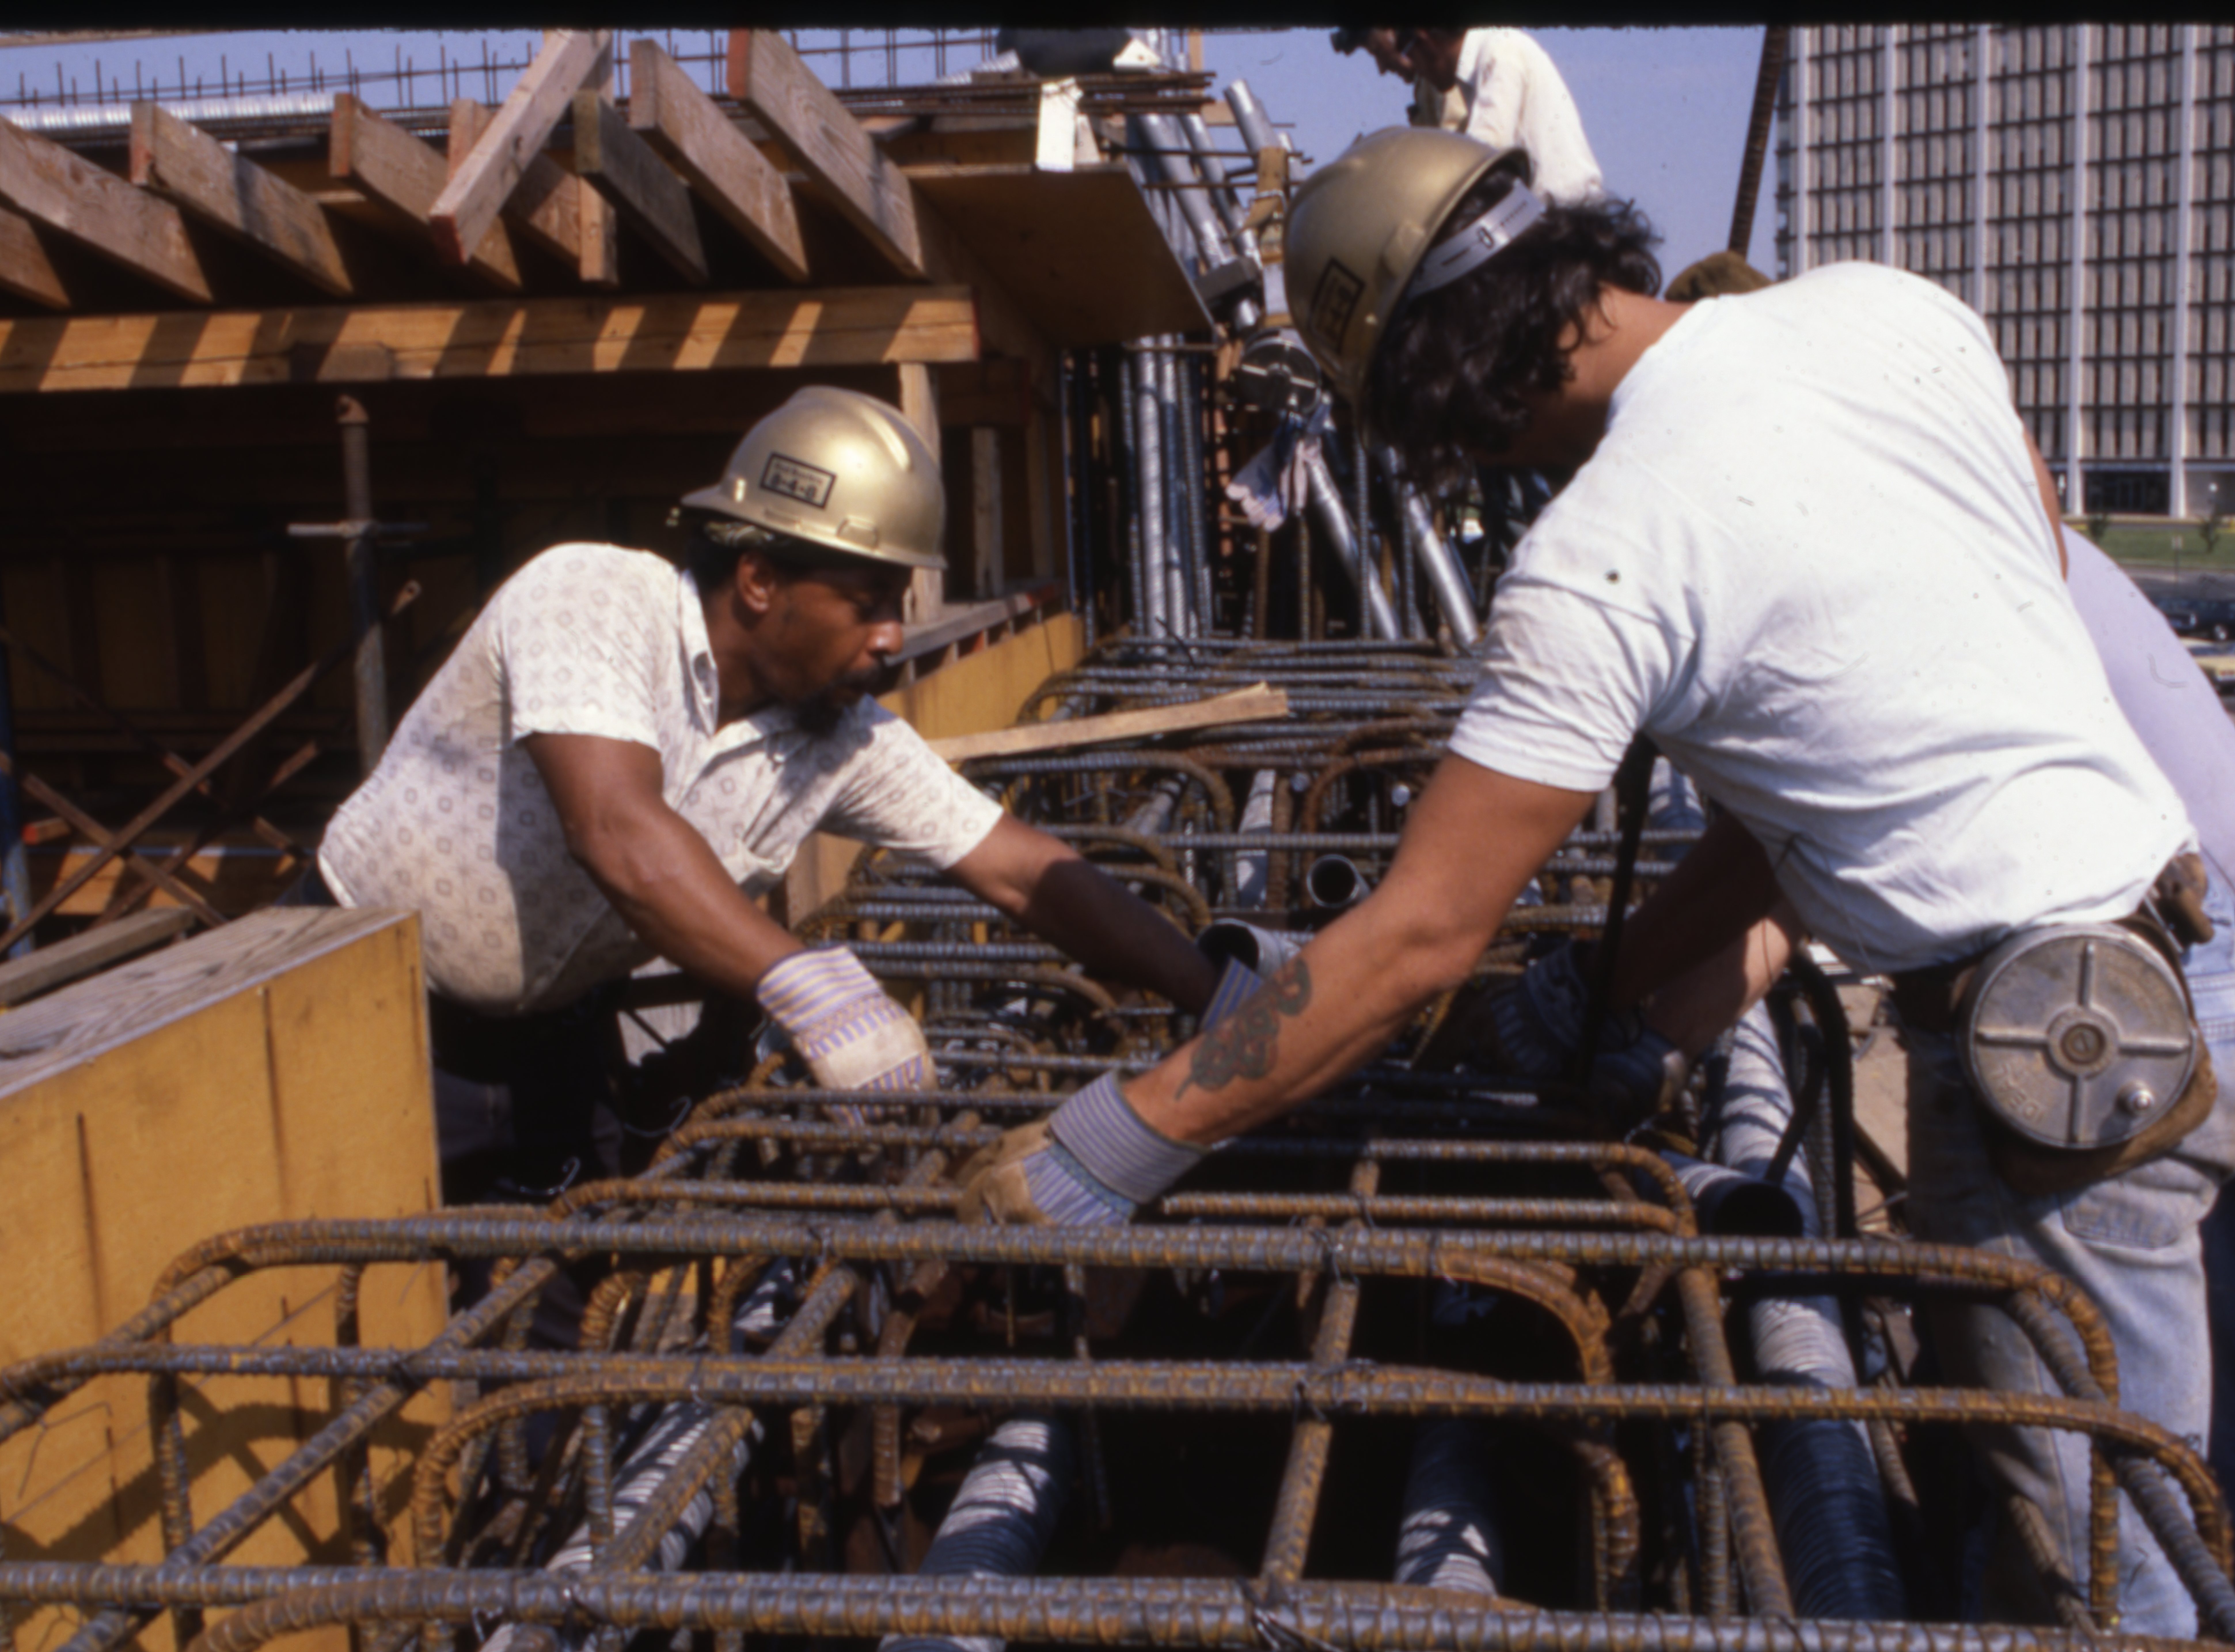 Eisenhower Ave construction – June 1980